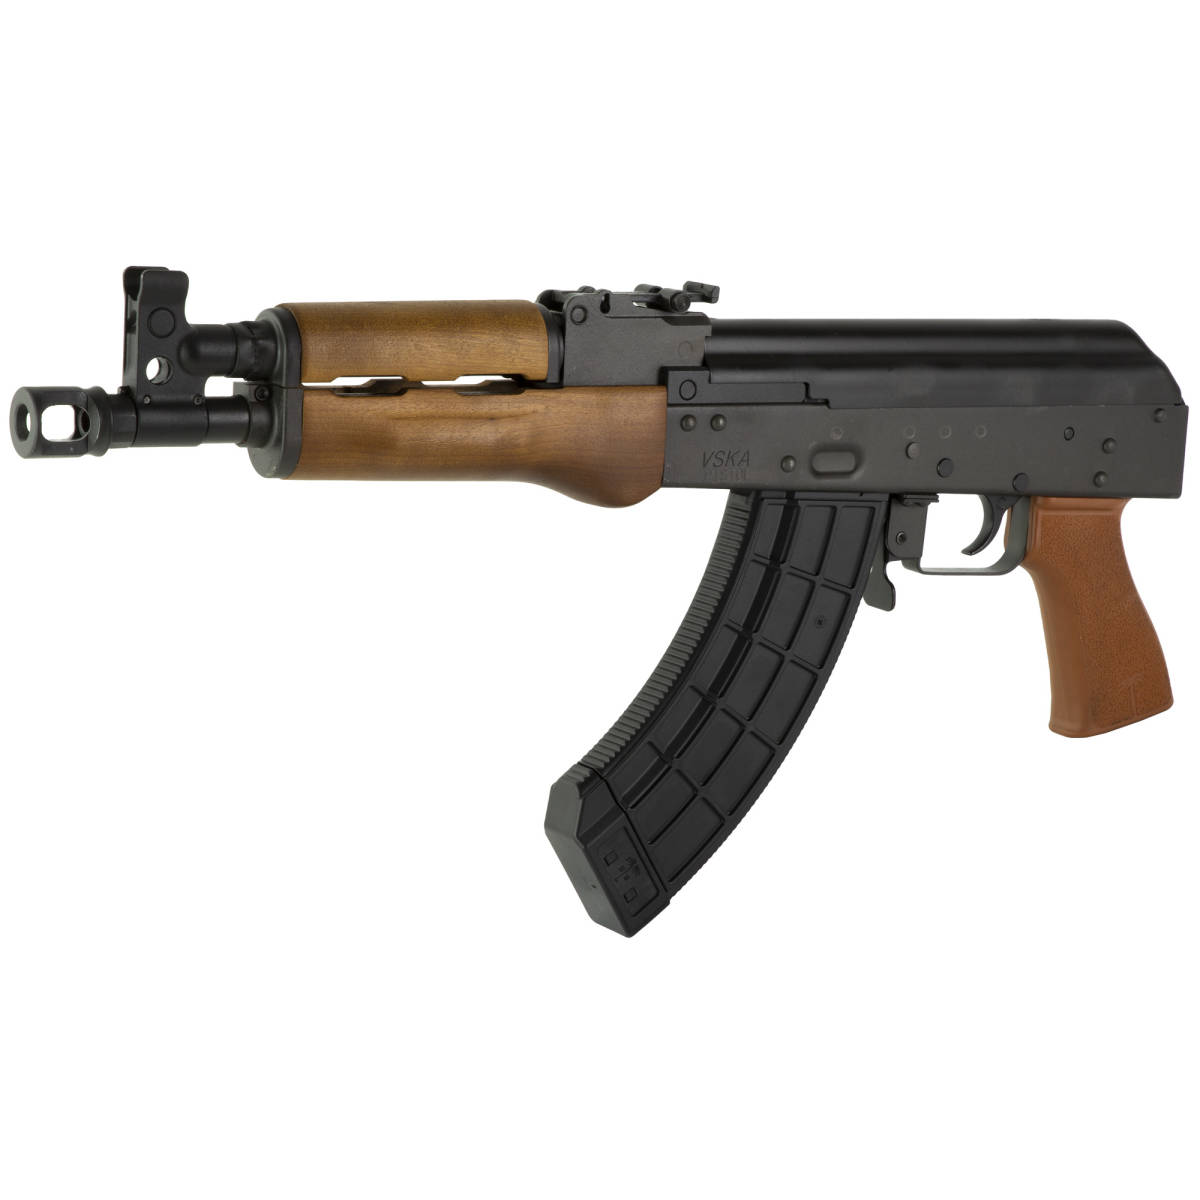 CENTURY DRACO AK-47 PISTOL VSKA 7.62X39 RAK1 TACTICAL AK-img-2